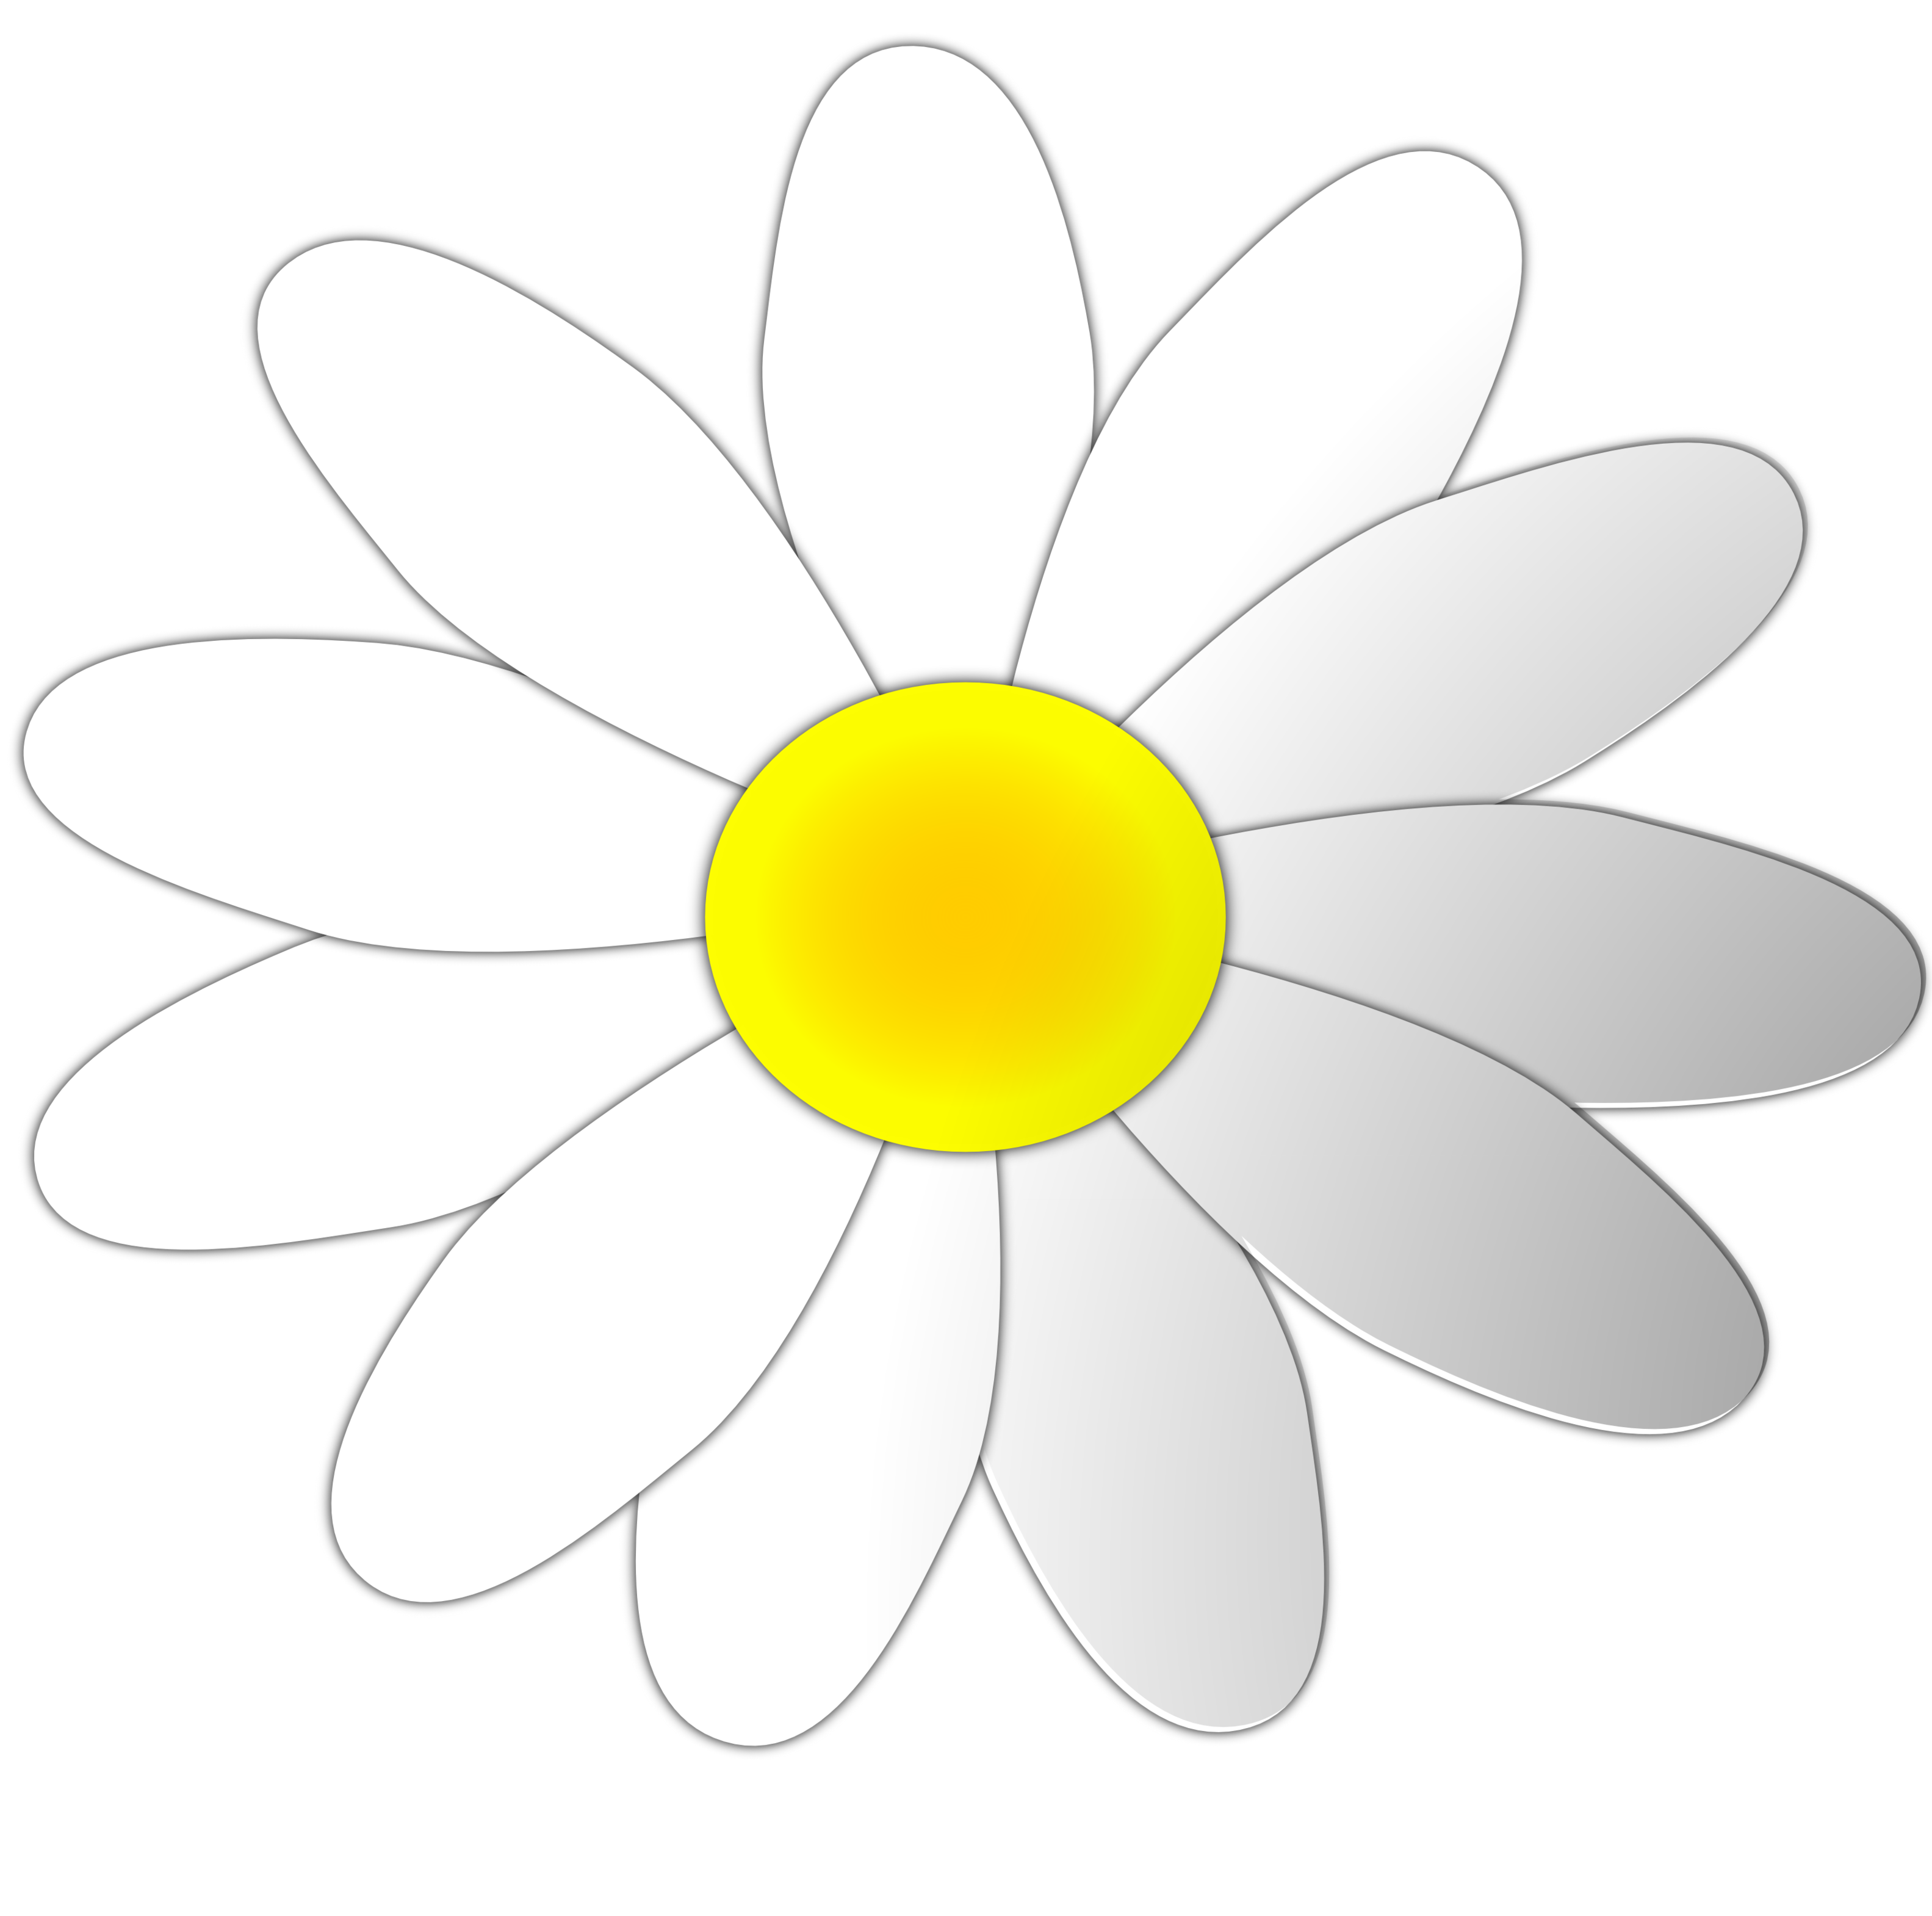 Daisy Flower Clipart. Valenti - Daisy Flower Clip Art